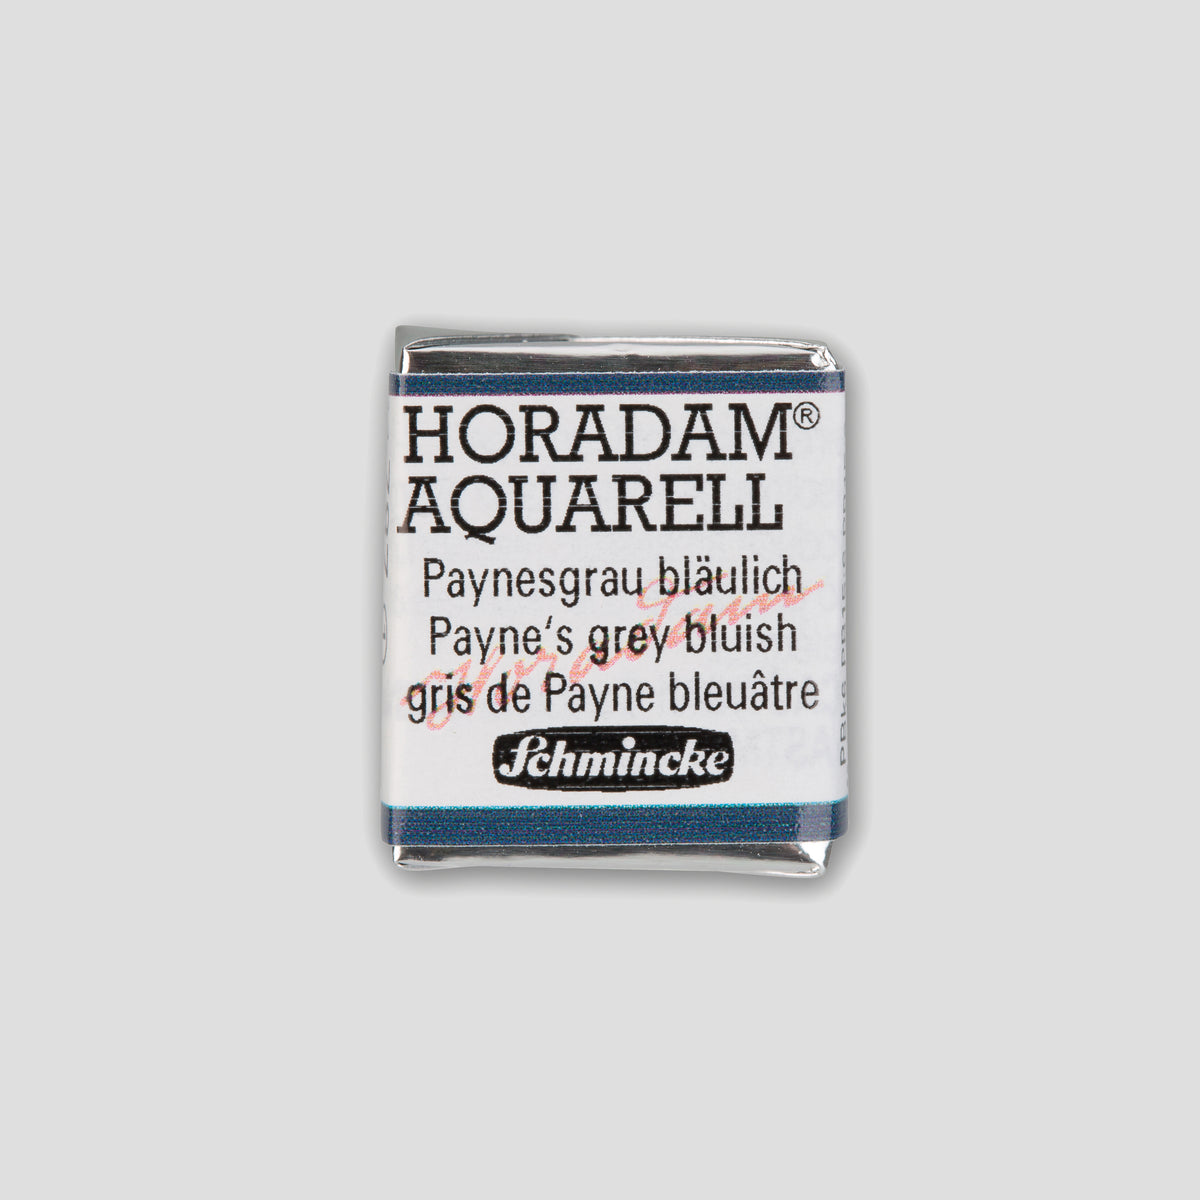 Schmincke Horadam® Halbpfanne Paynes grau bläulich